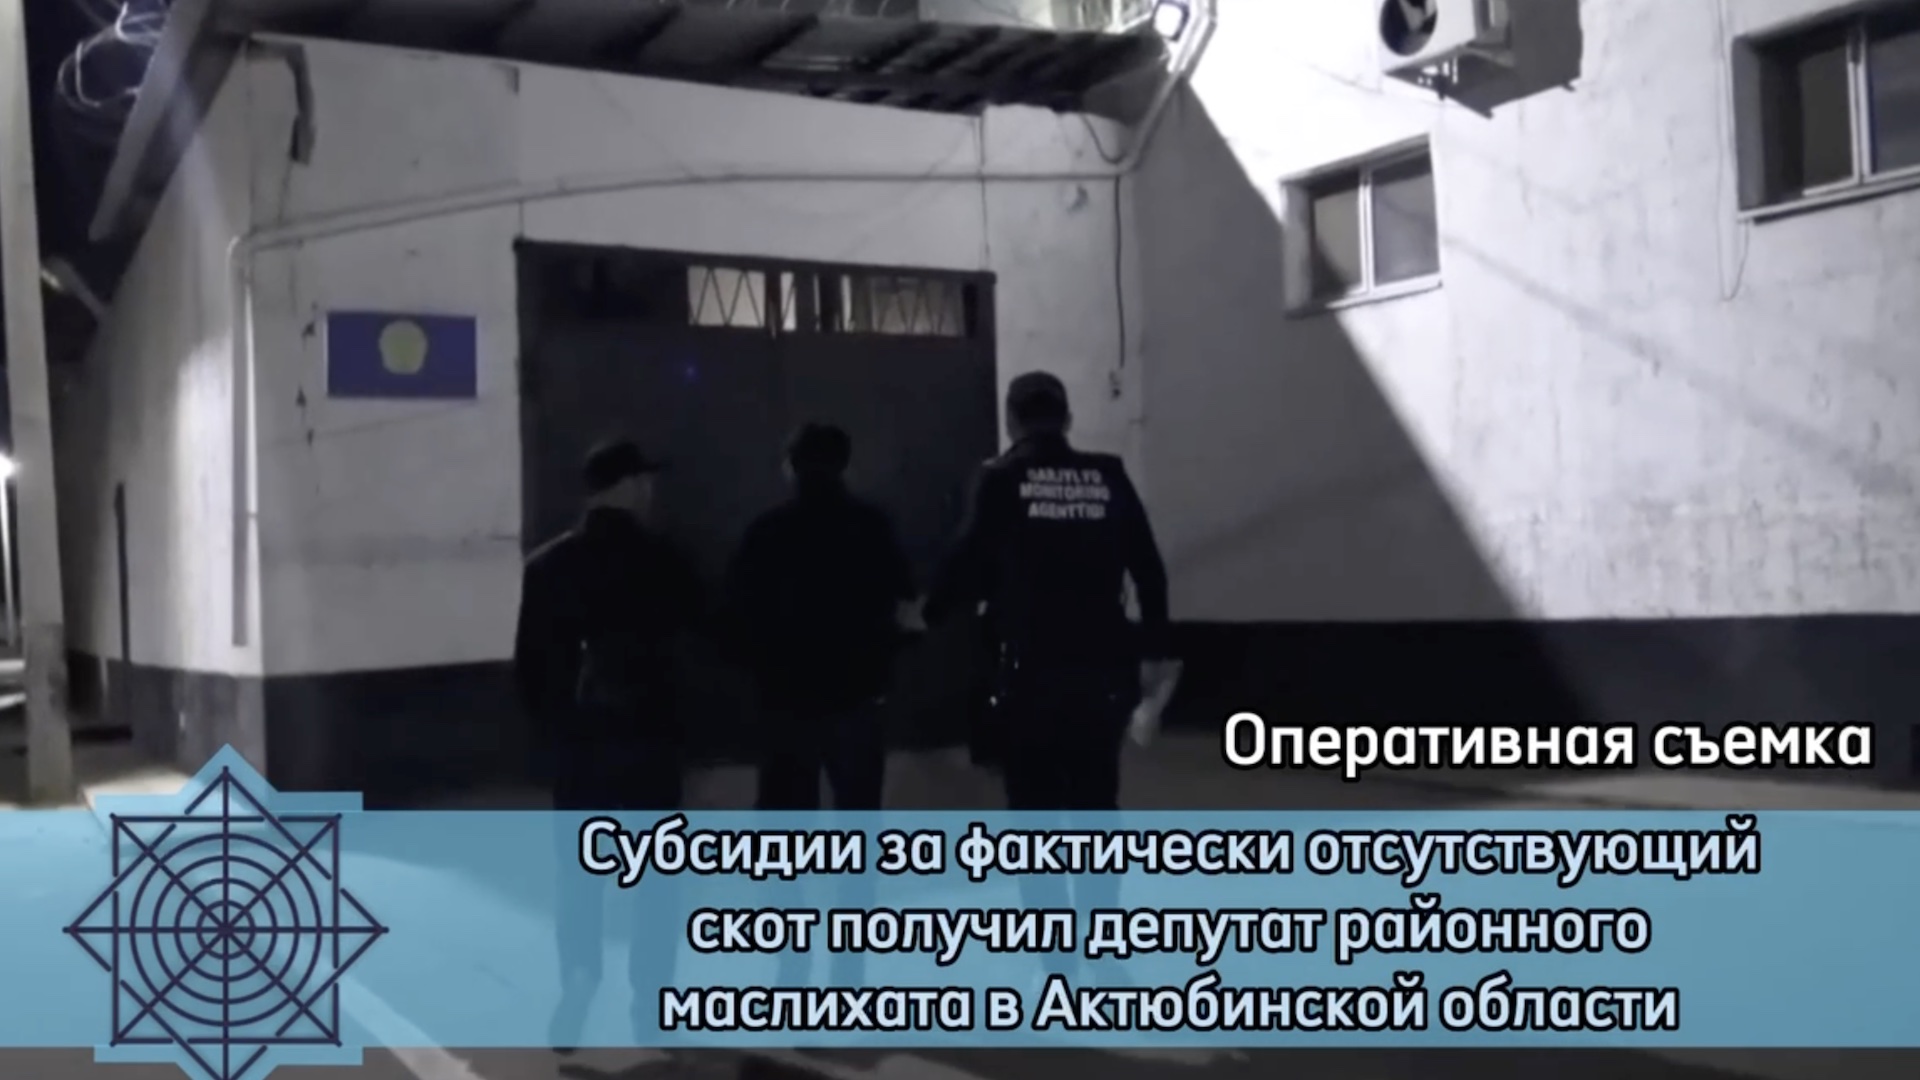 АФМ проводит расследование в отношении депутата районного маслихата Актюбинской области